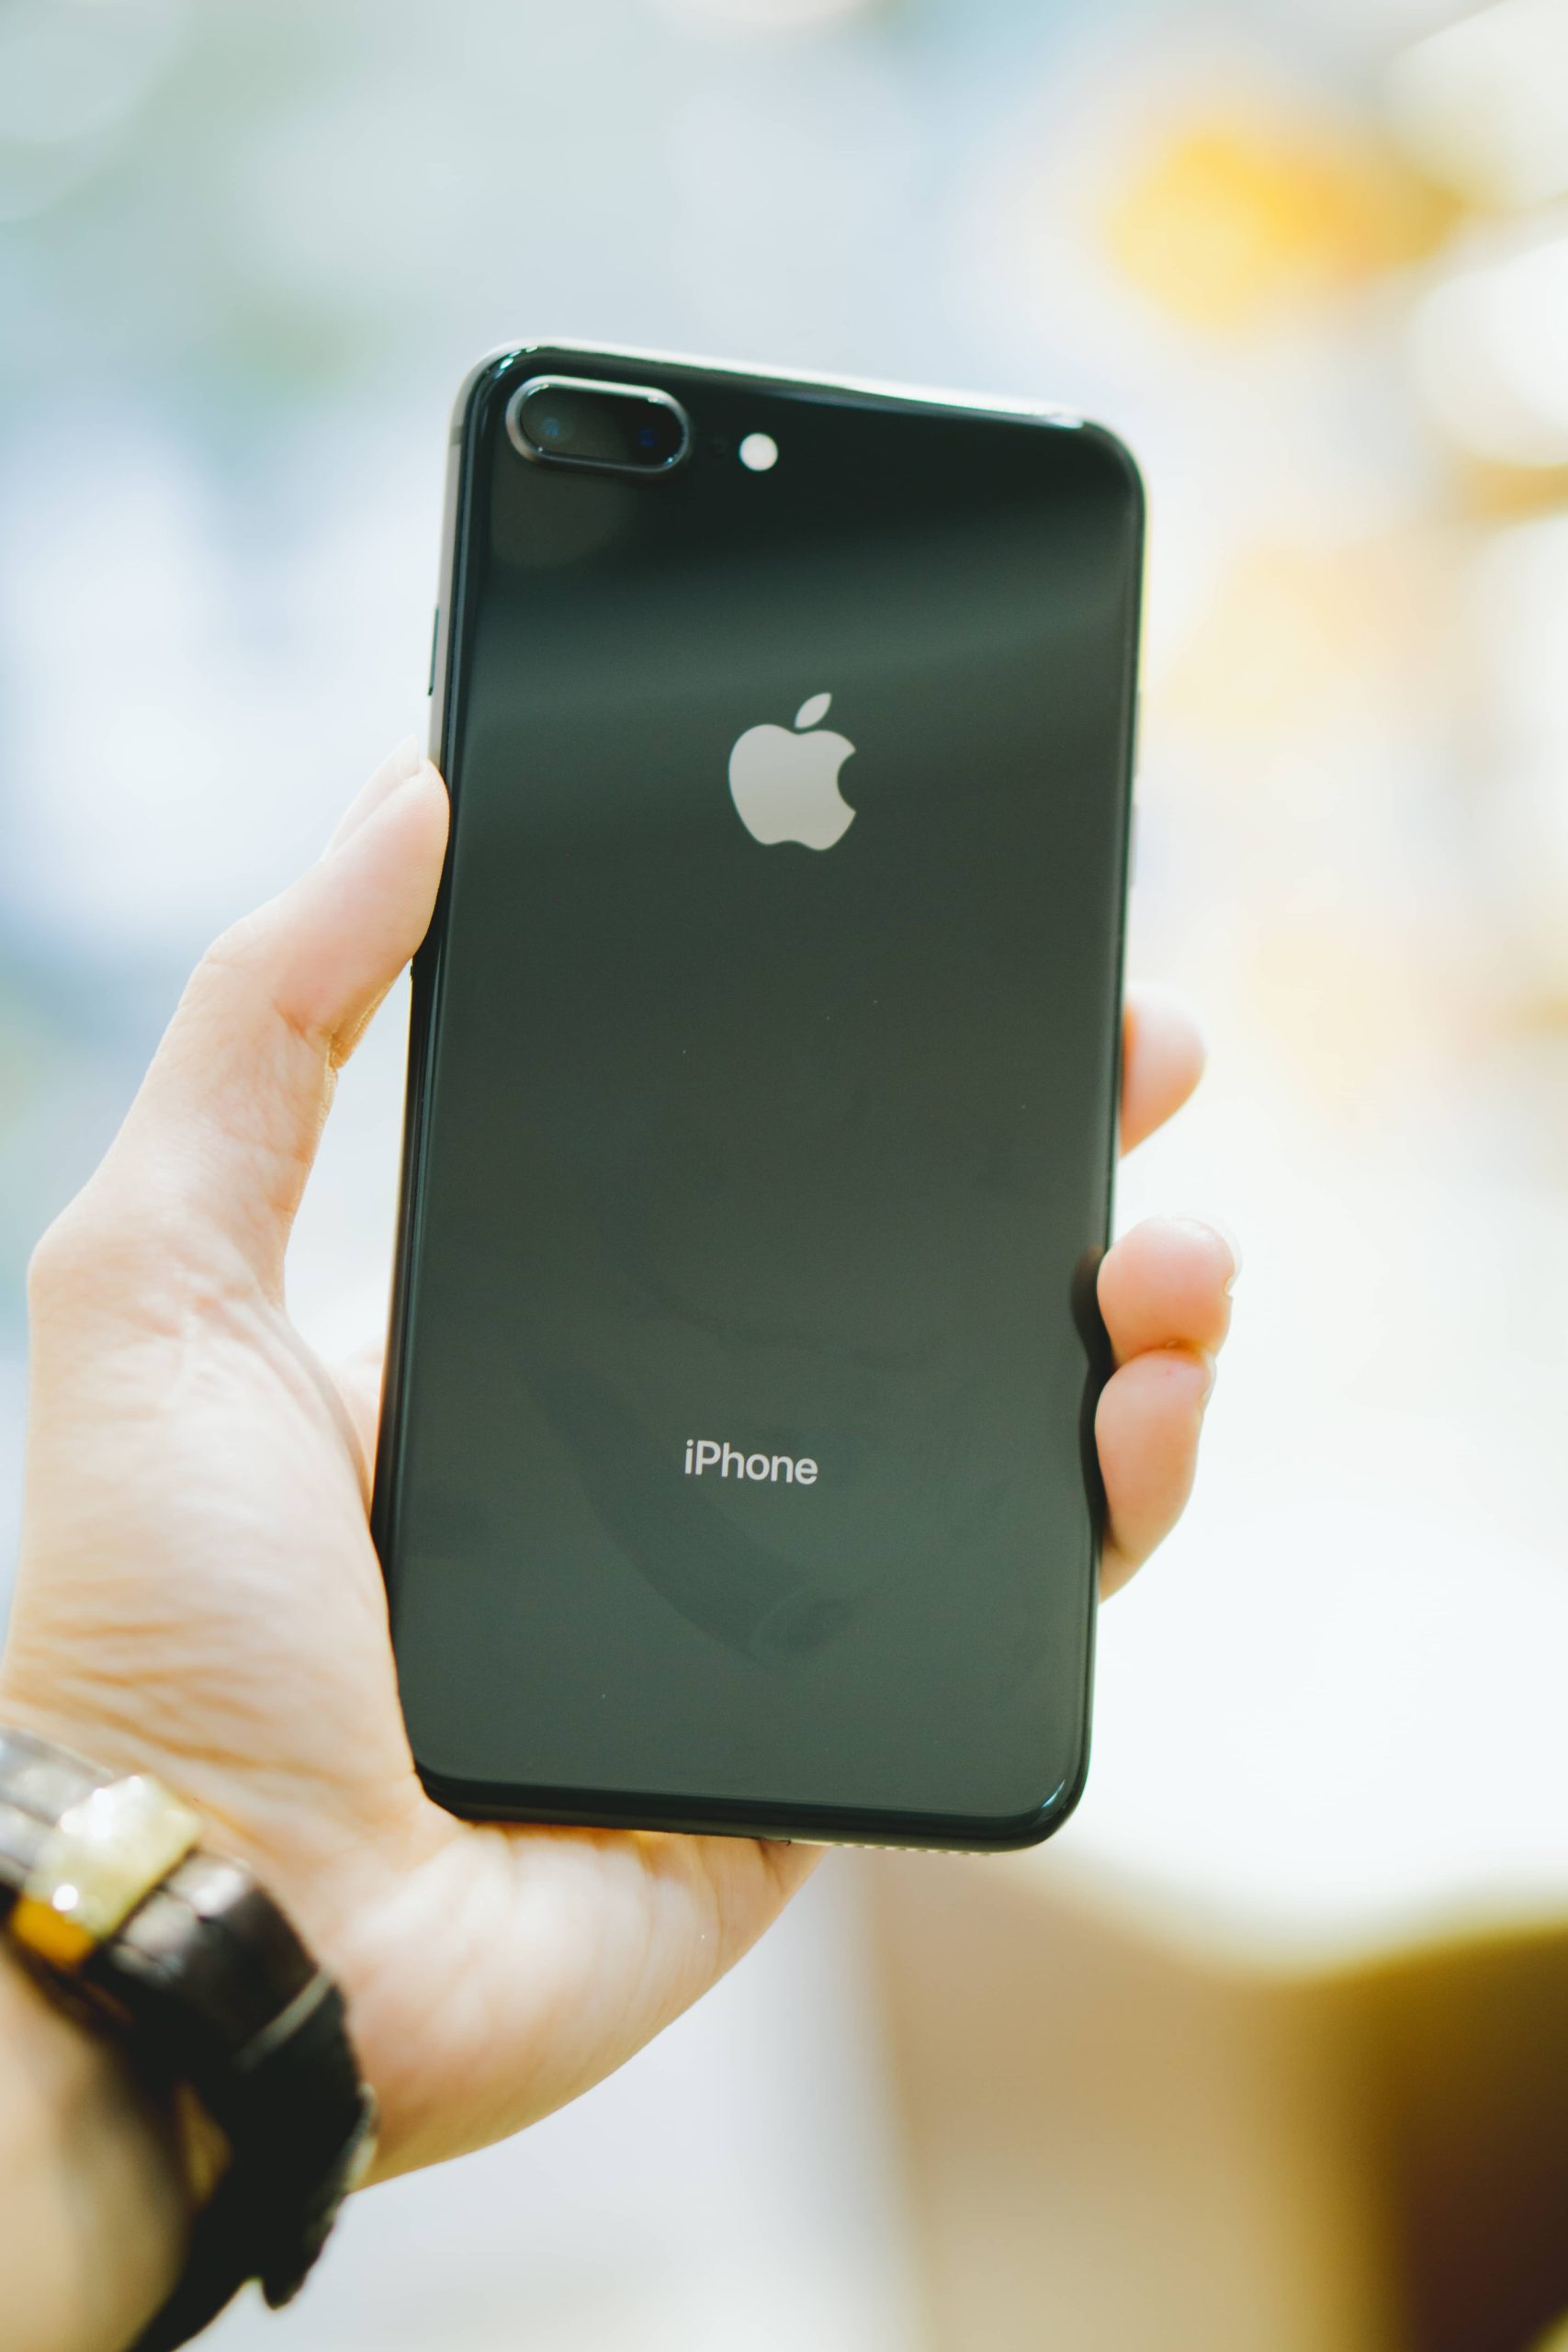 Dương Lê Smartphone - iPhone 8 64Gb Quốc tế New 100% TBH Sẵn 3 màu : Gray,  Gold, Red Máy nguyên seal, chưa active giá hơn máy cũ vài trăm Giá :